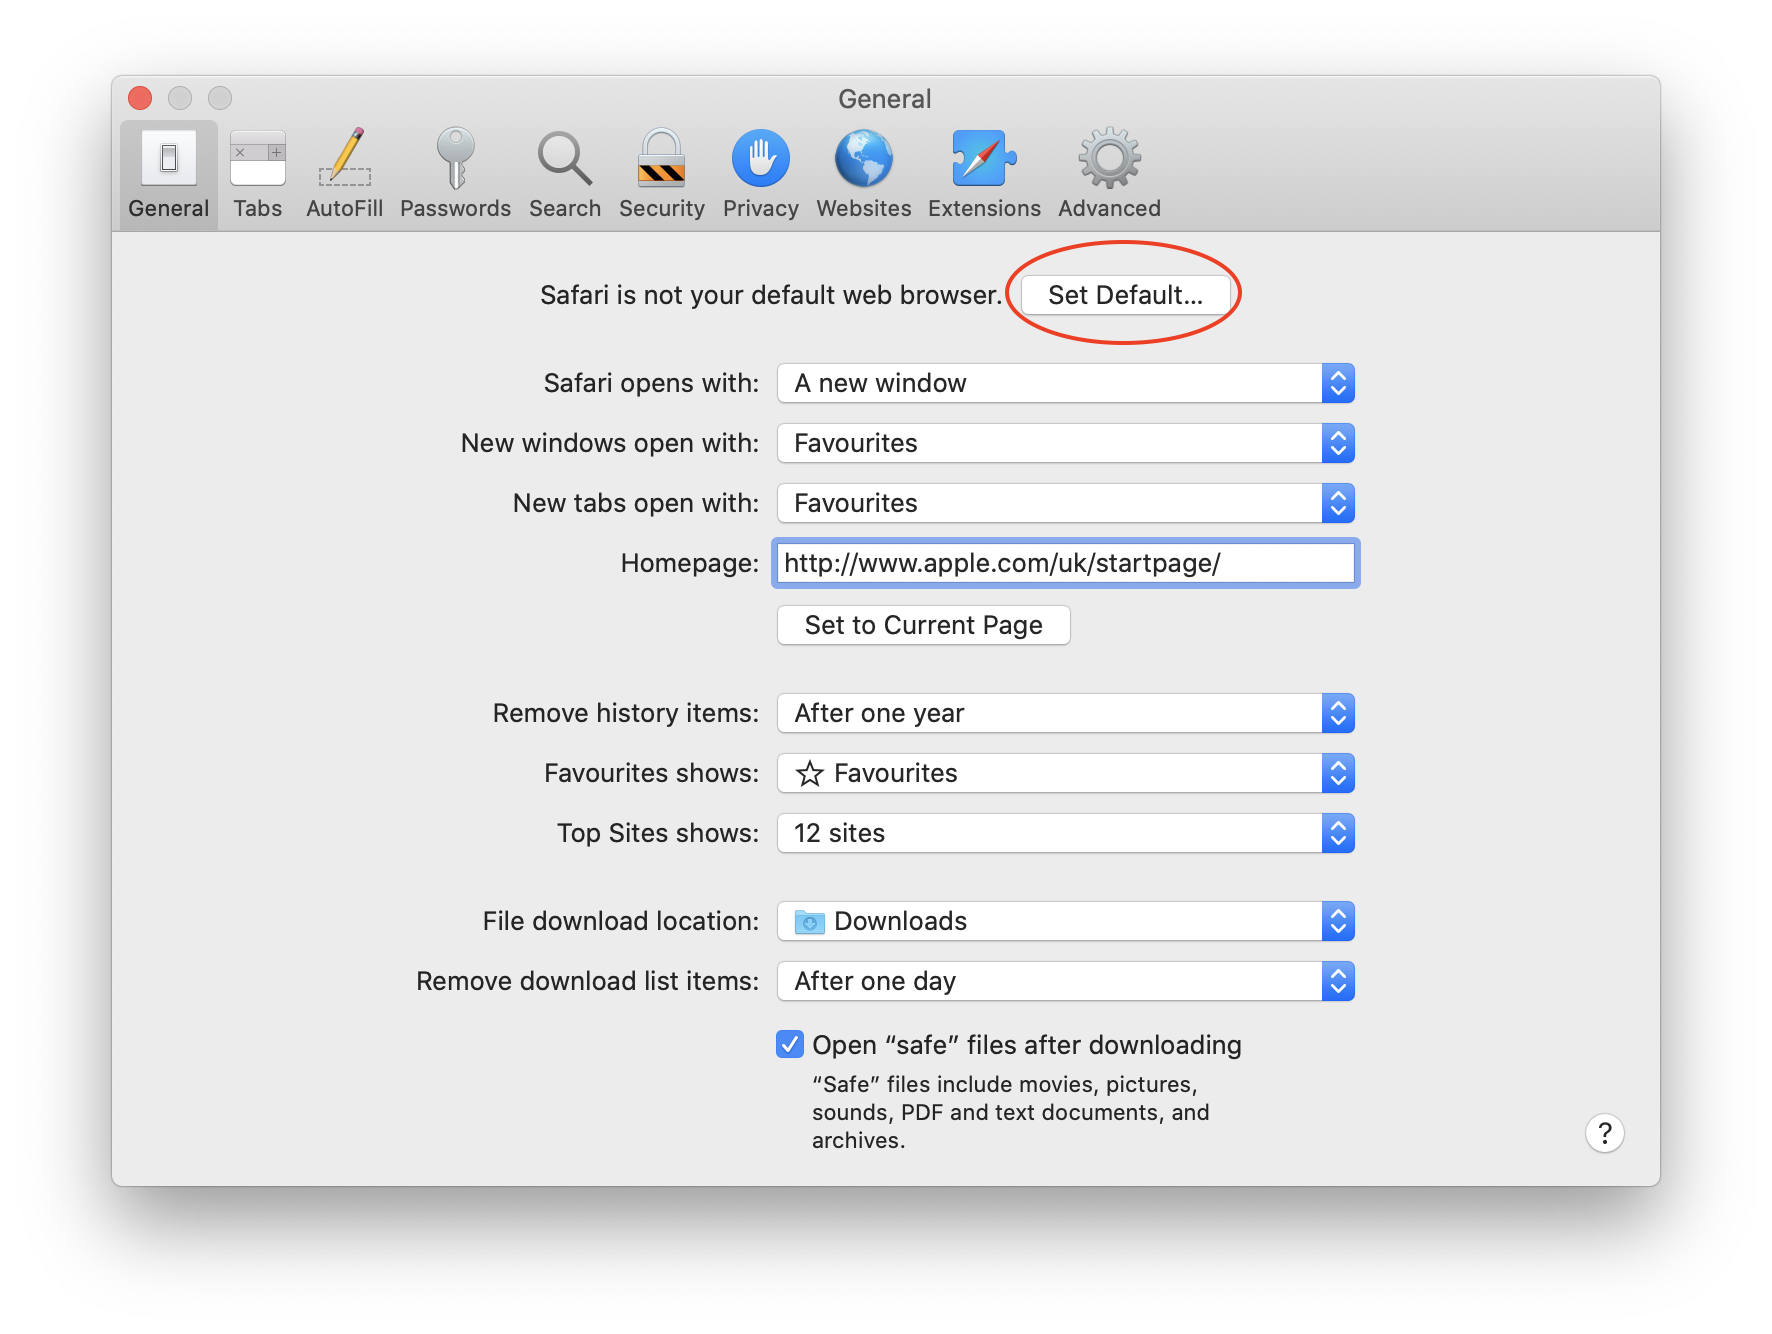 mac changer free download